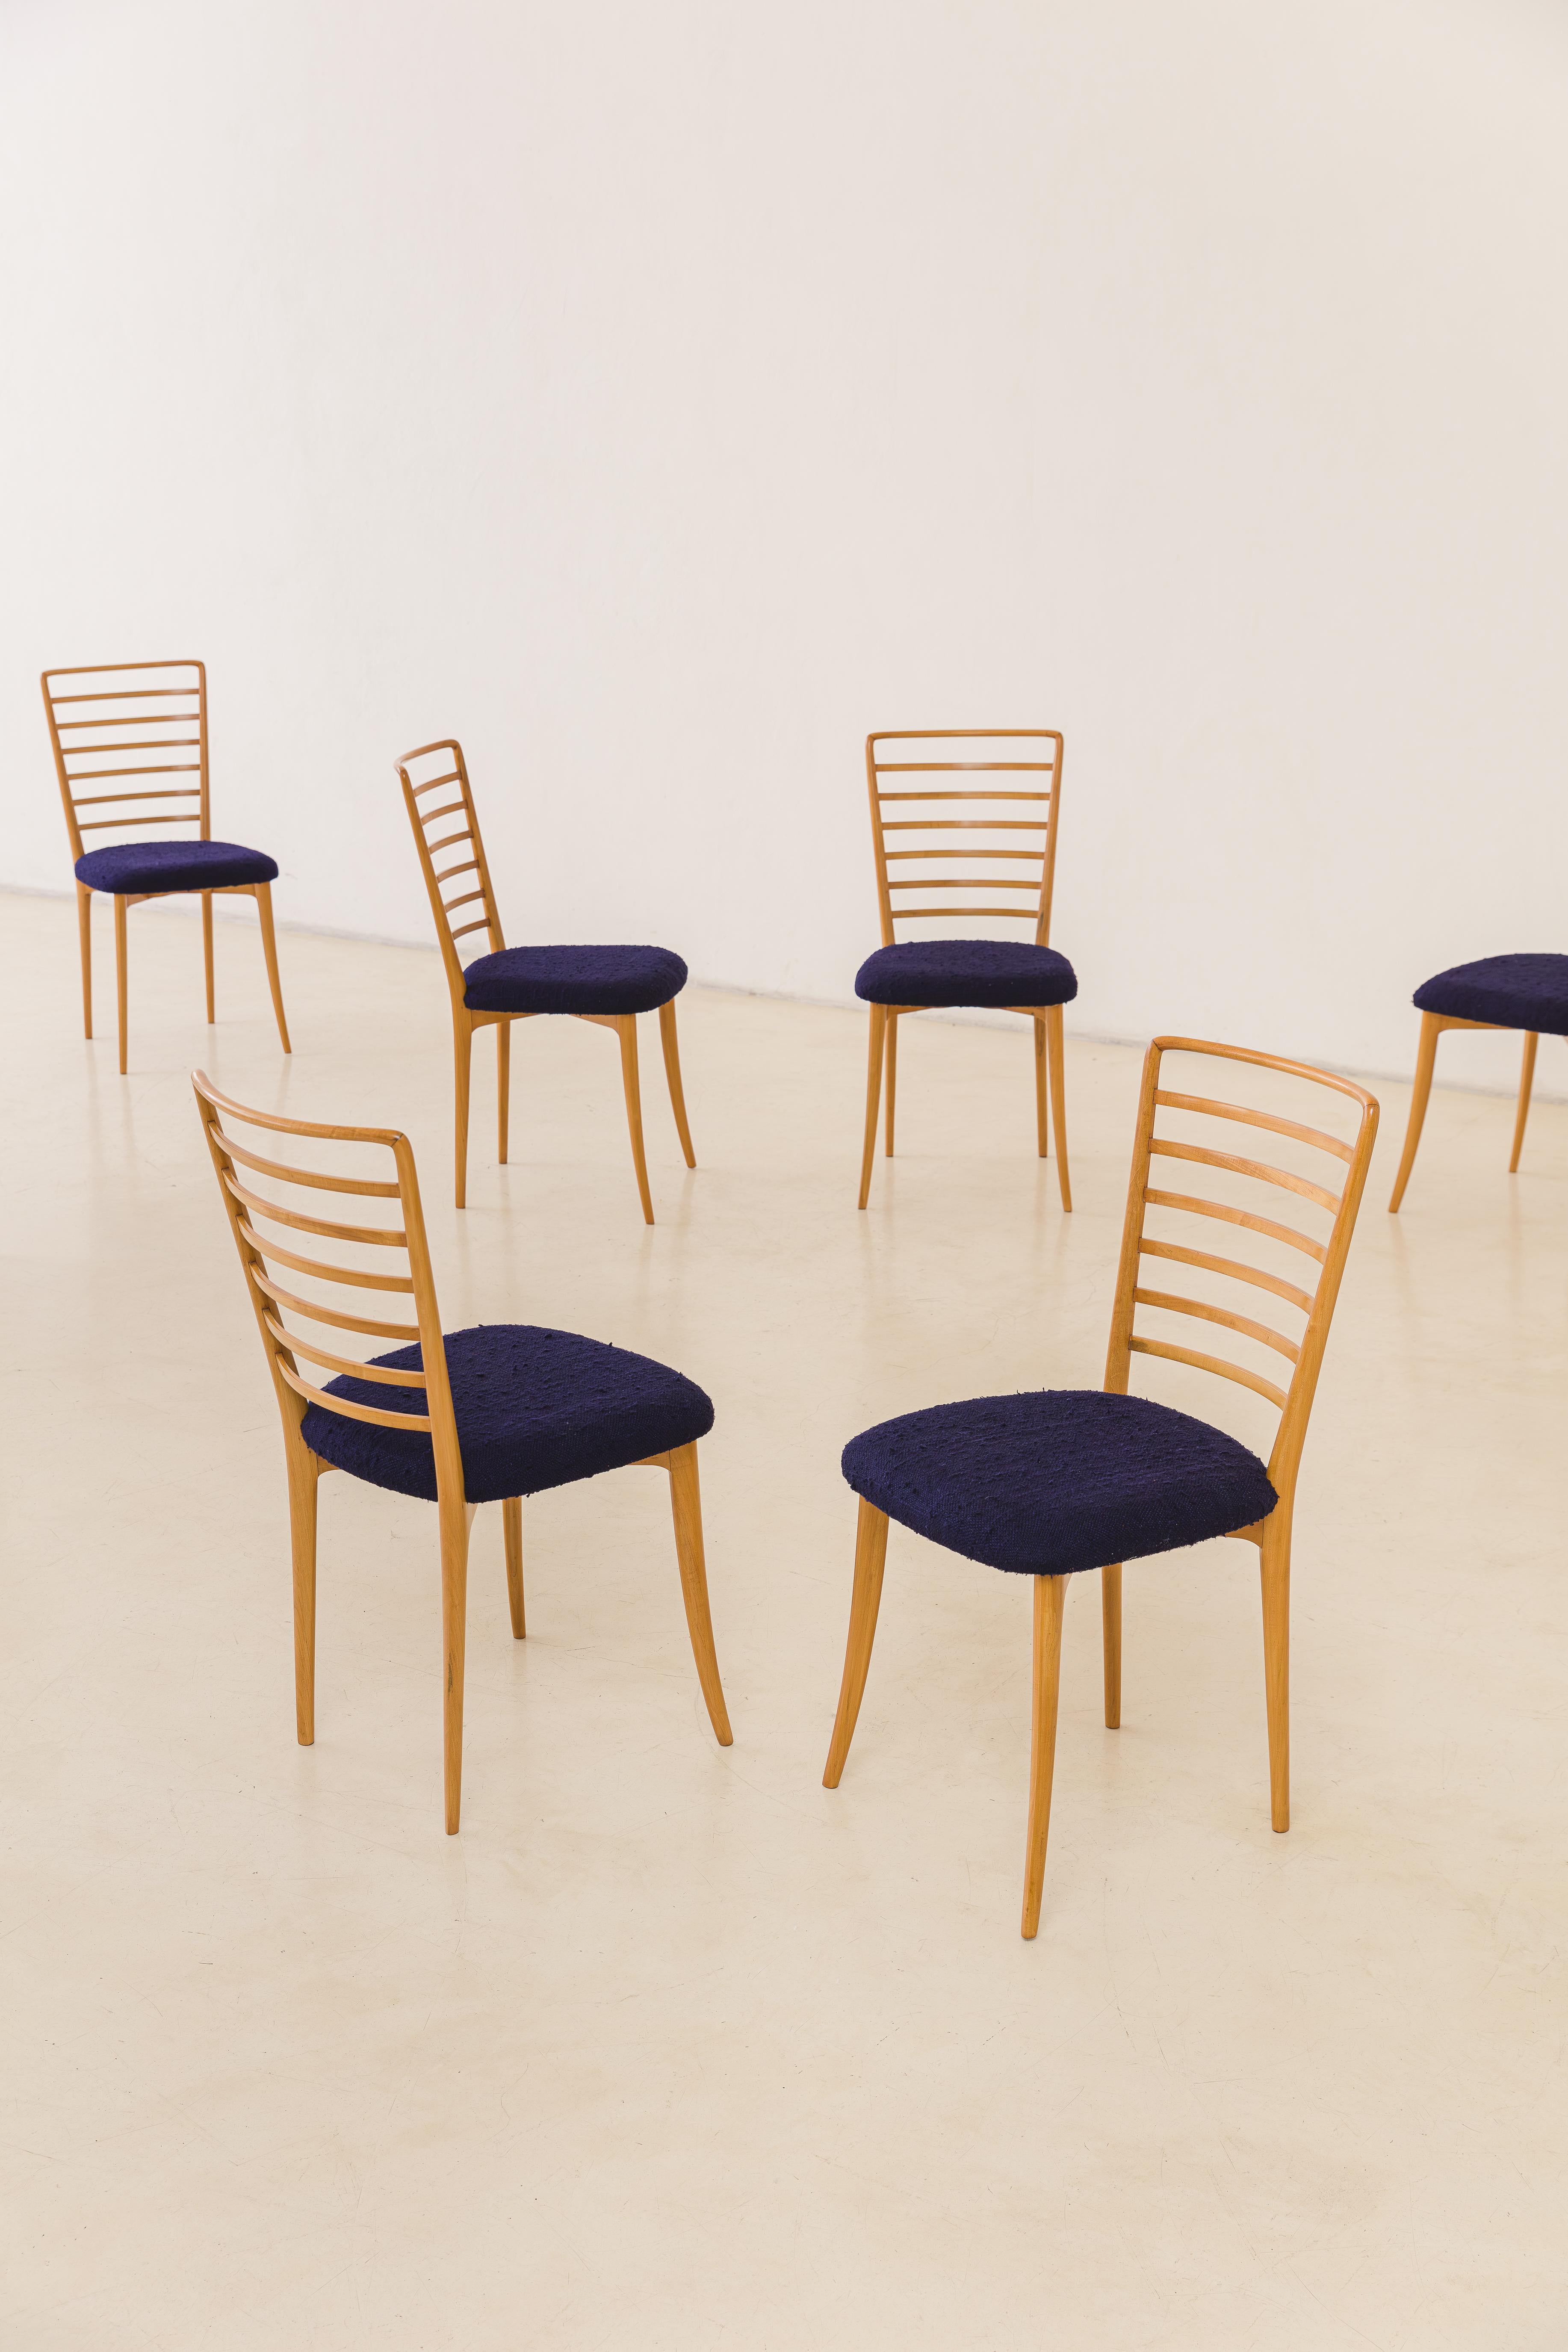 Disponible en huit unités, cet ensemble de chaises de salle à manger a été conçu par Joaquim Tenreiro (1906-1992) dans les années 1950. À l'instar des autres créations de Tenreiro, ce sentiment de légèreté transcende le poids et s'étend à la grâce